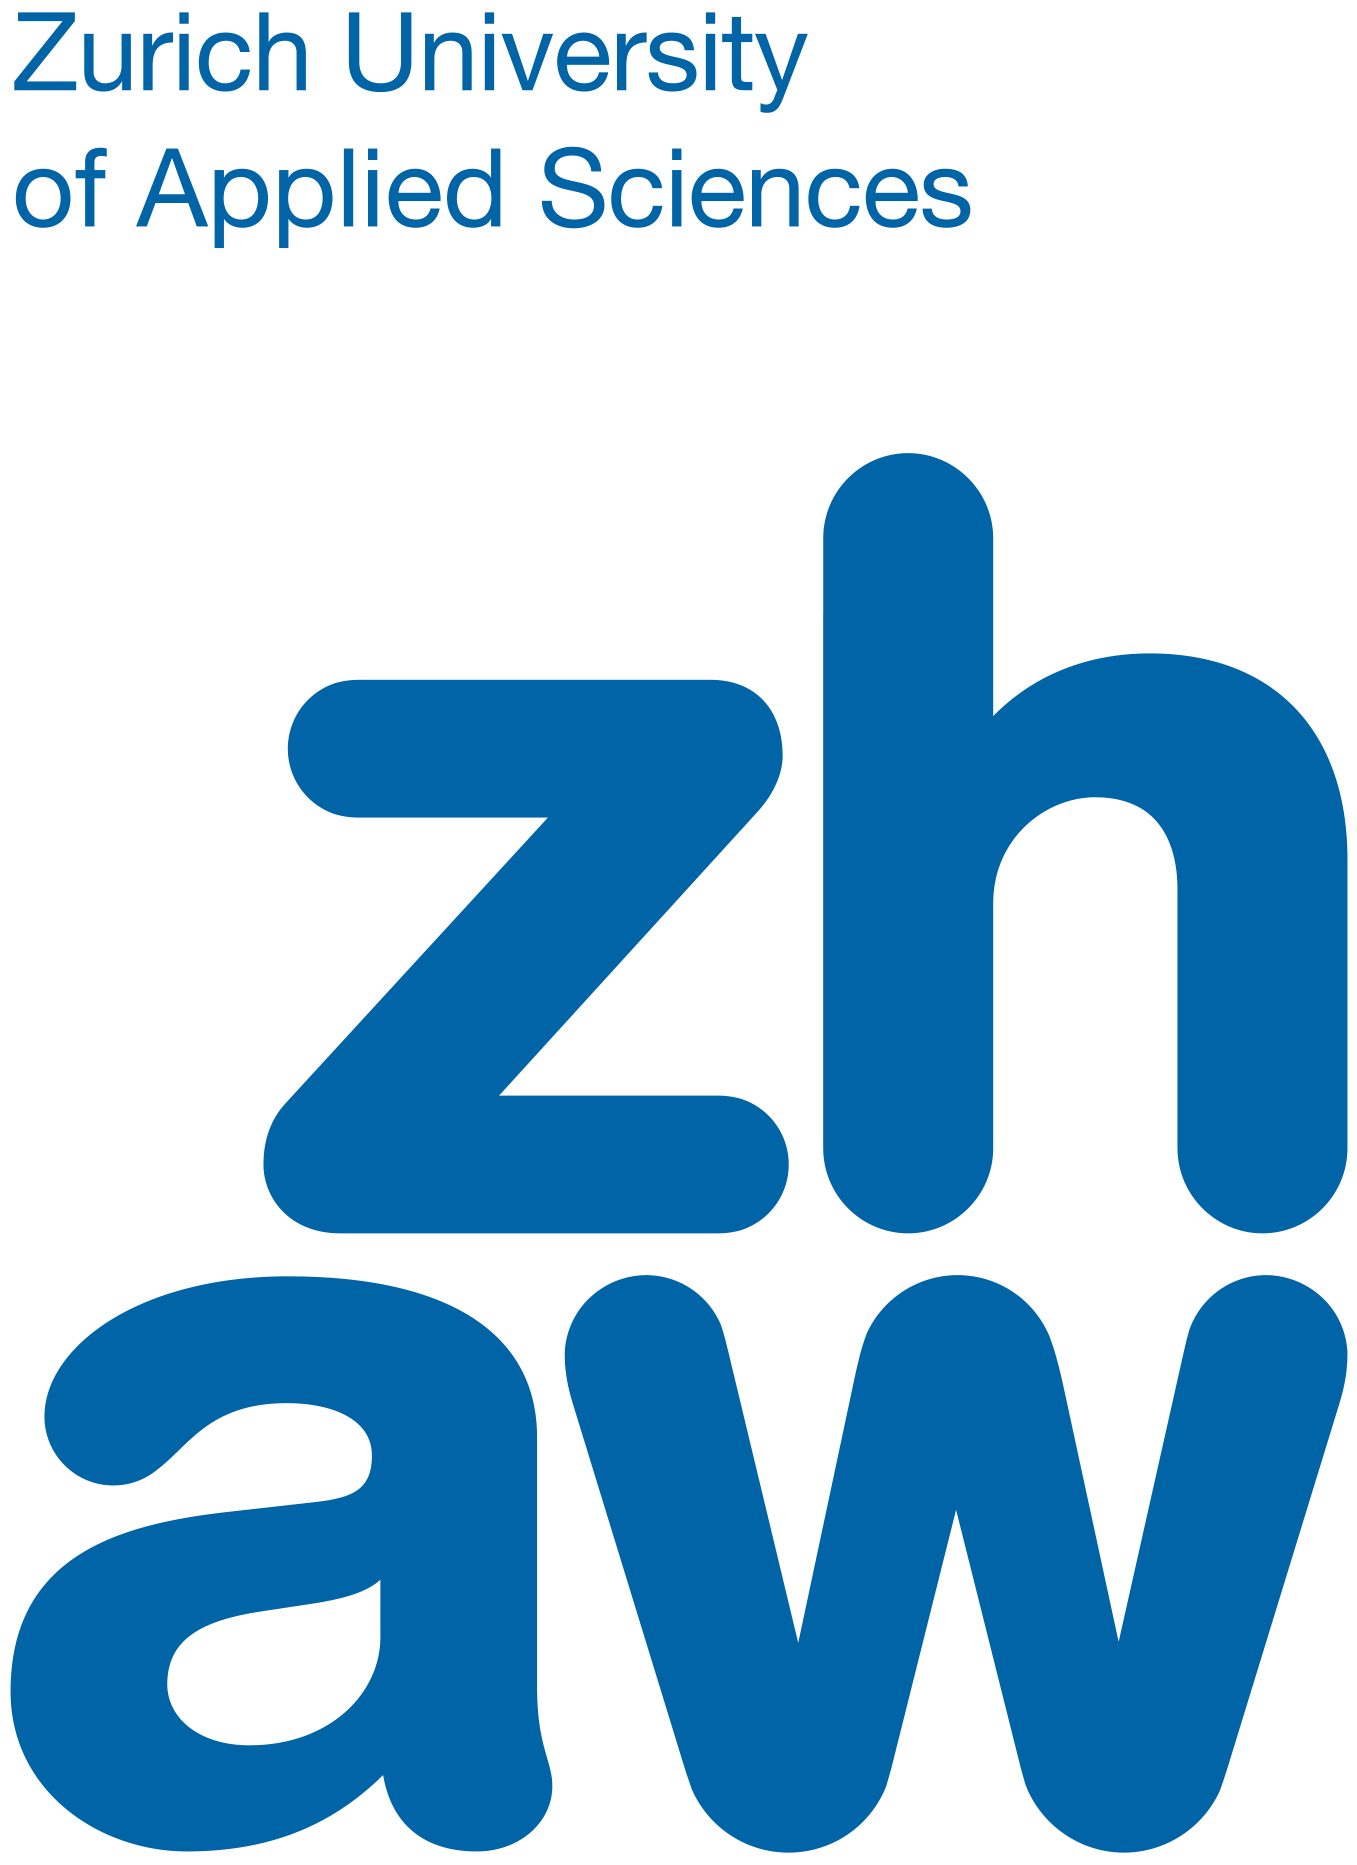 zhaw_logo_rgb_byline_e